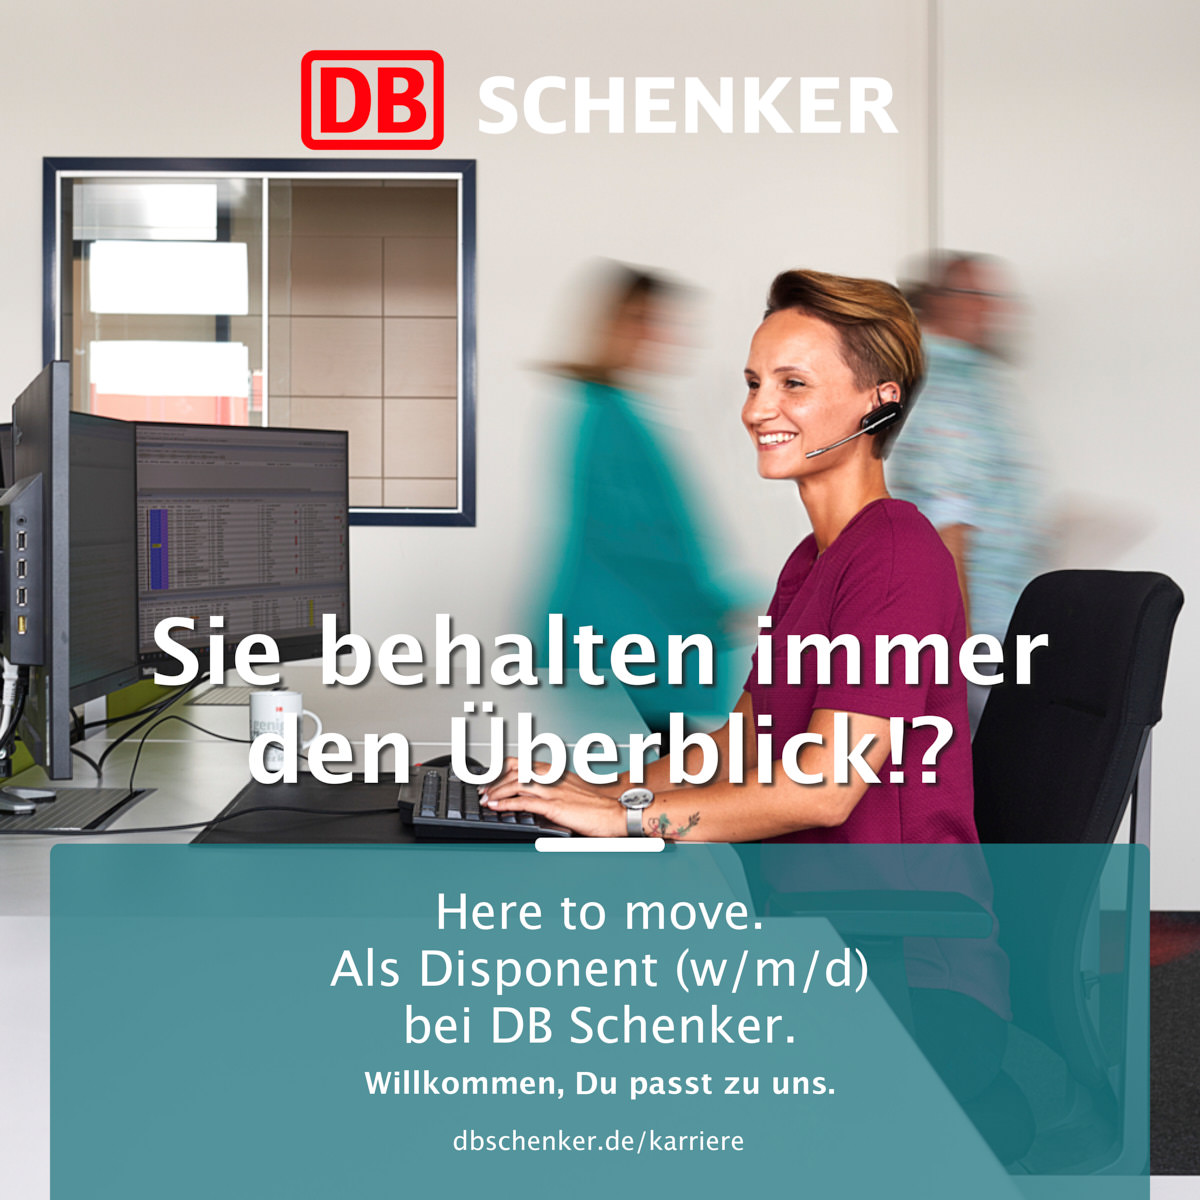 disponentin-db-chenker-im-buero-mit-headset-laechelt